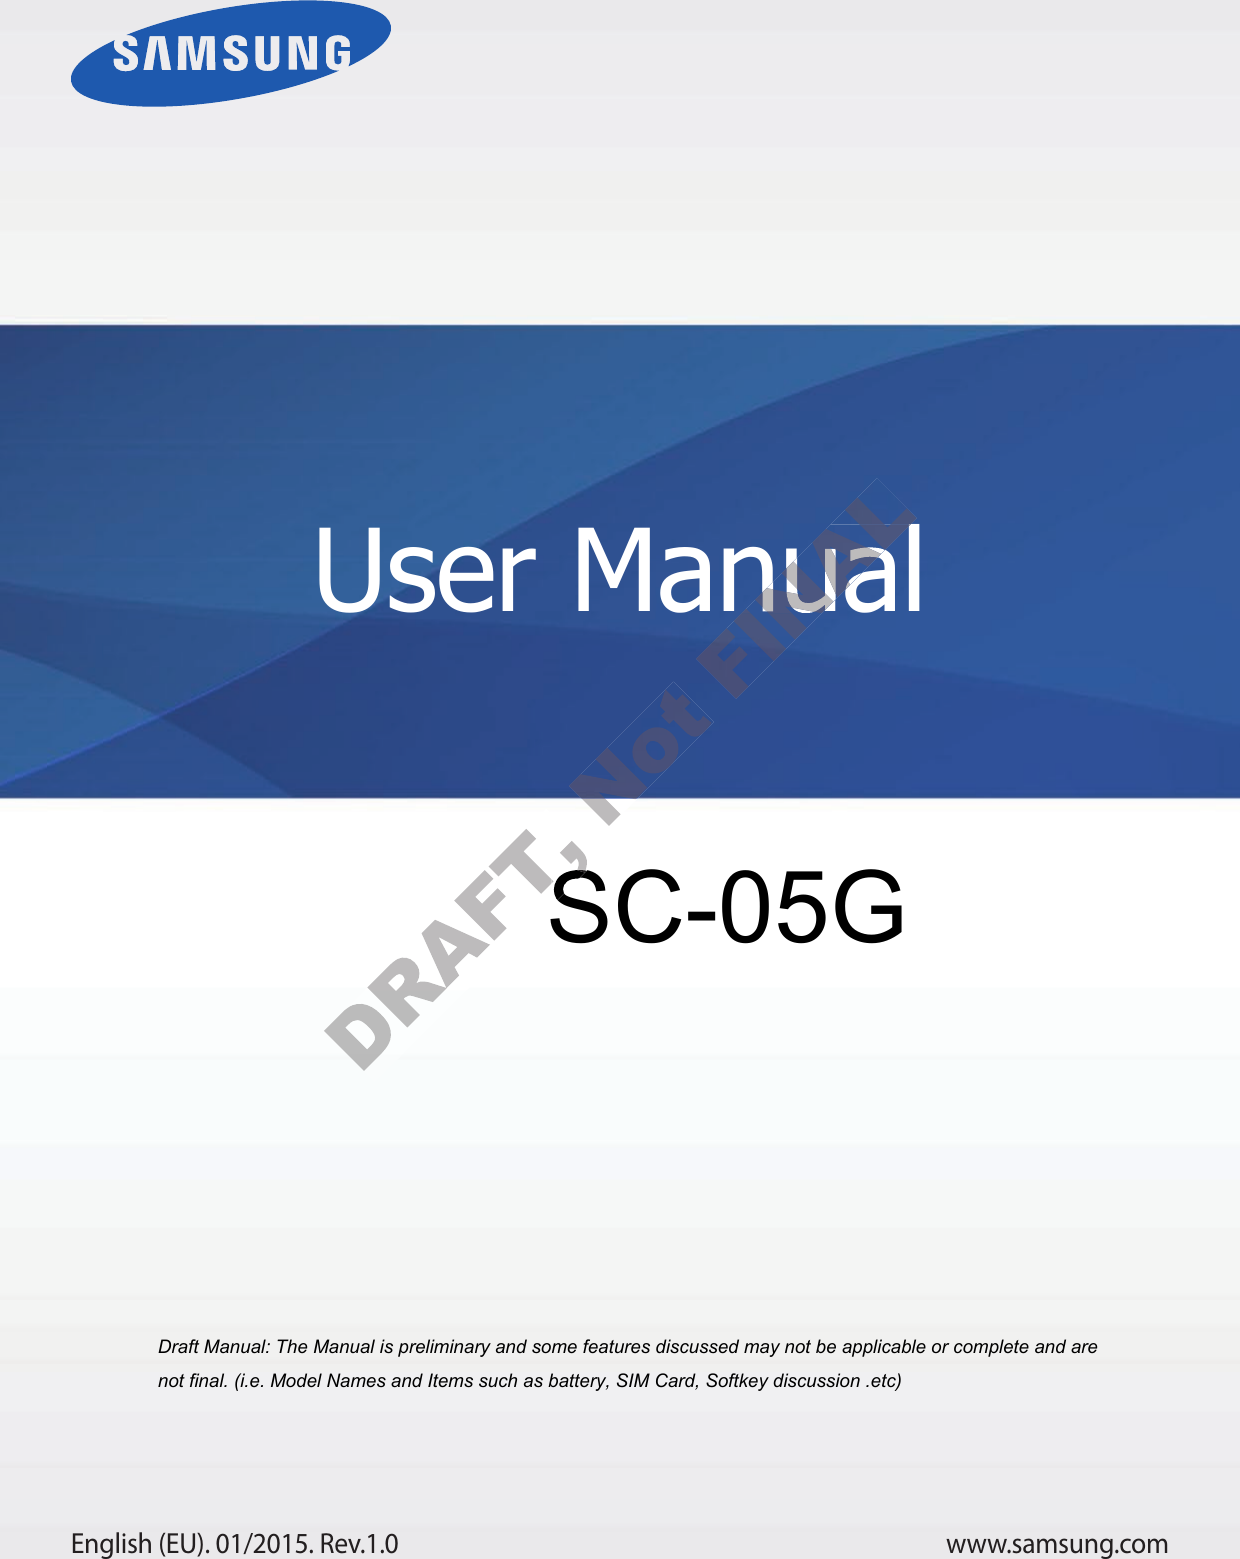 www.samsung.comUser ManualEnglish (EU). 01/2015. Rev.1.0a ana  ana  na and  a dd a n  aa   and a n na  d a and   a a  ad  dn SC-05G User ManualUser Manual